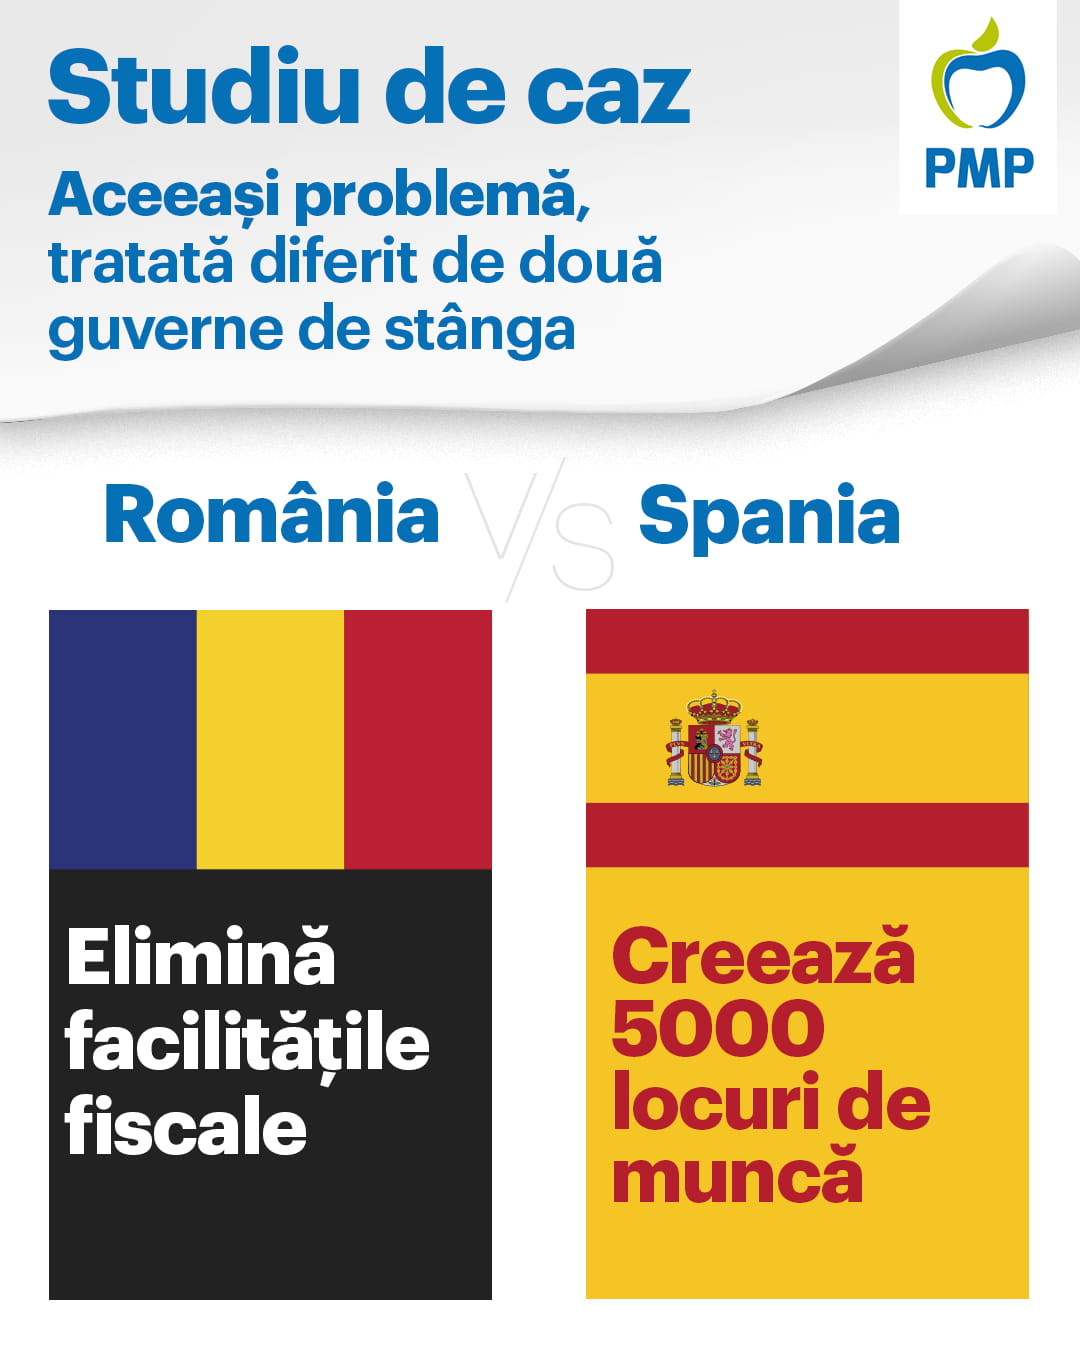 Studiu de caz: România vs. Spania